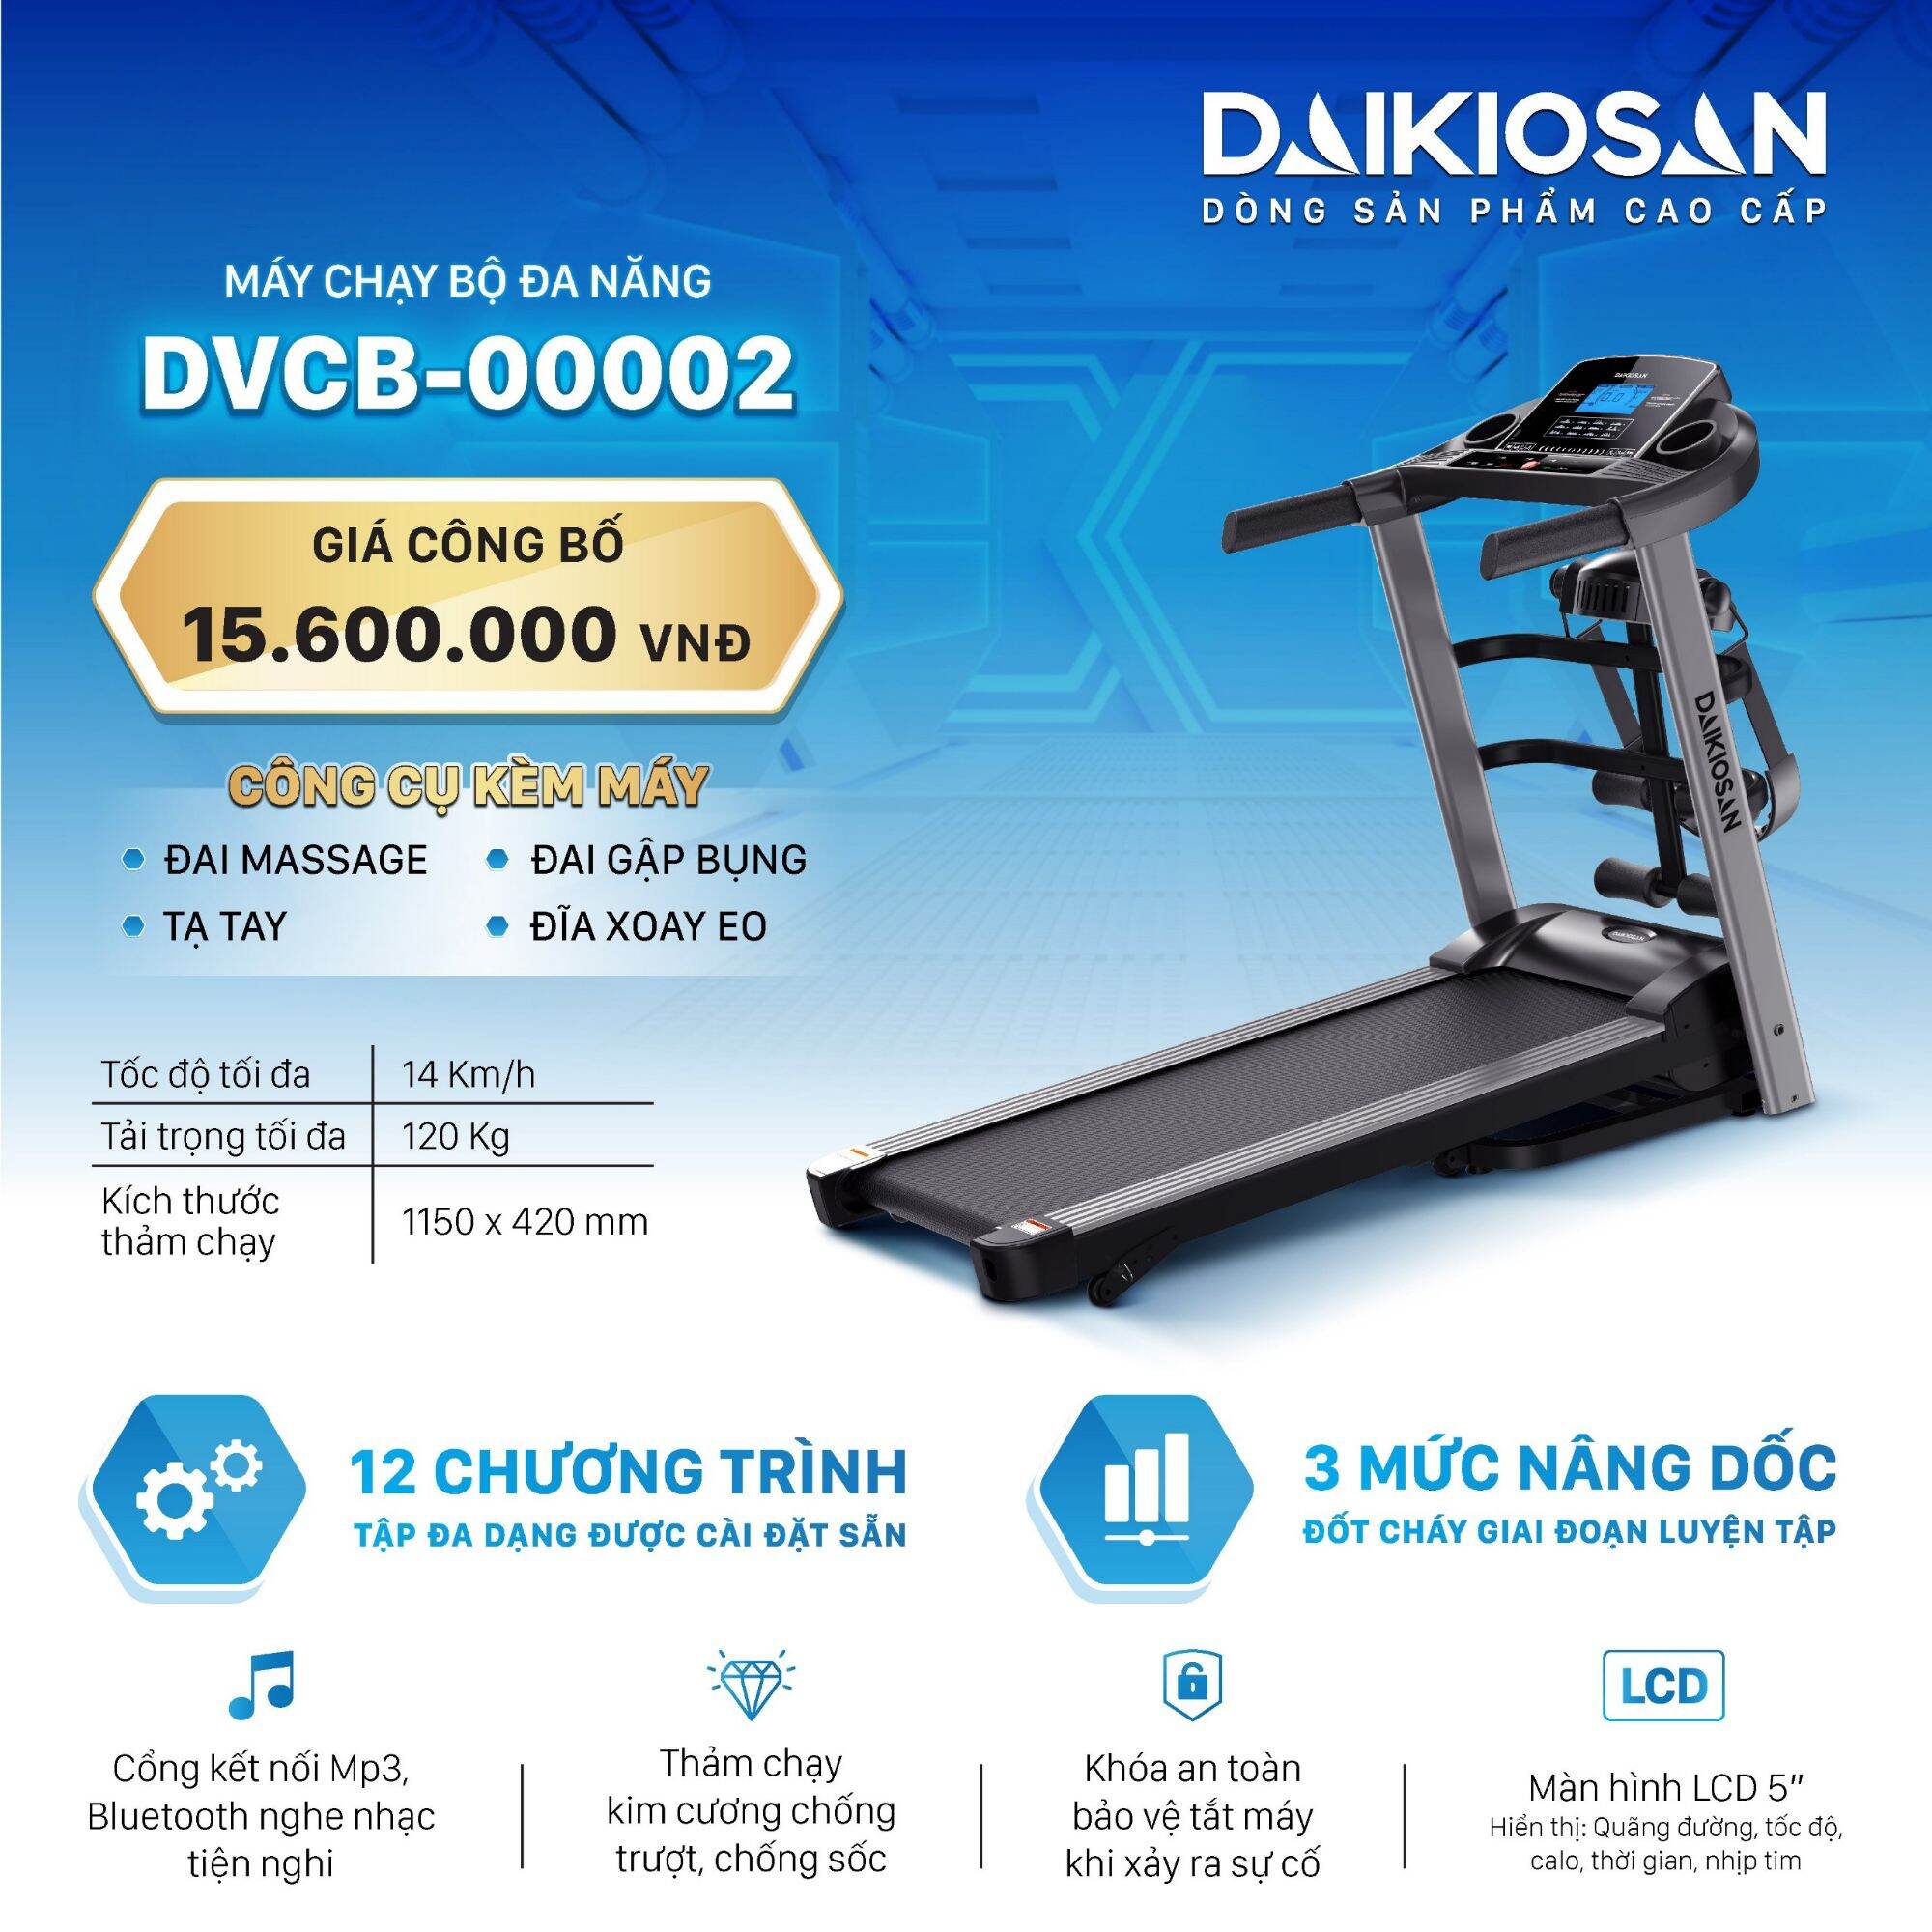 Máy chạy bộ đa năng Daikiosan DVCB-00002 CK 42%